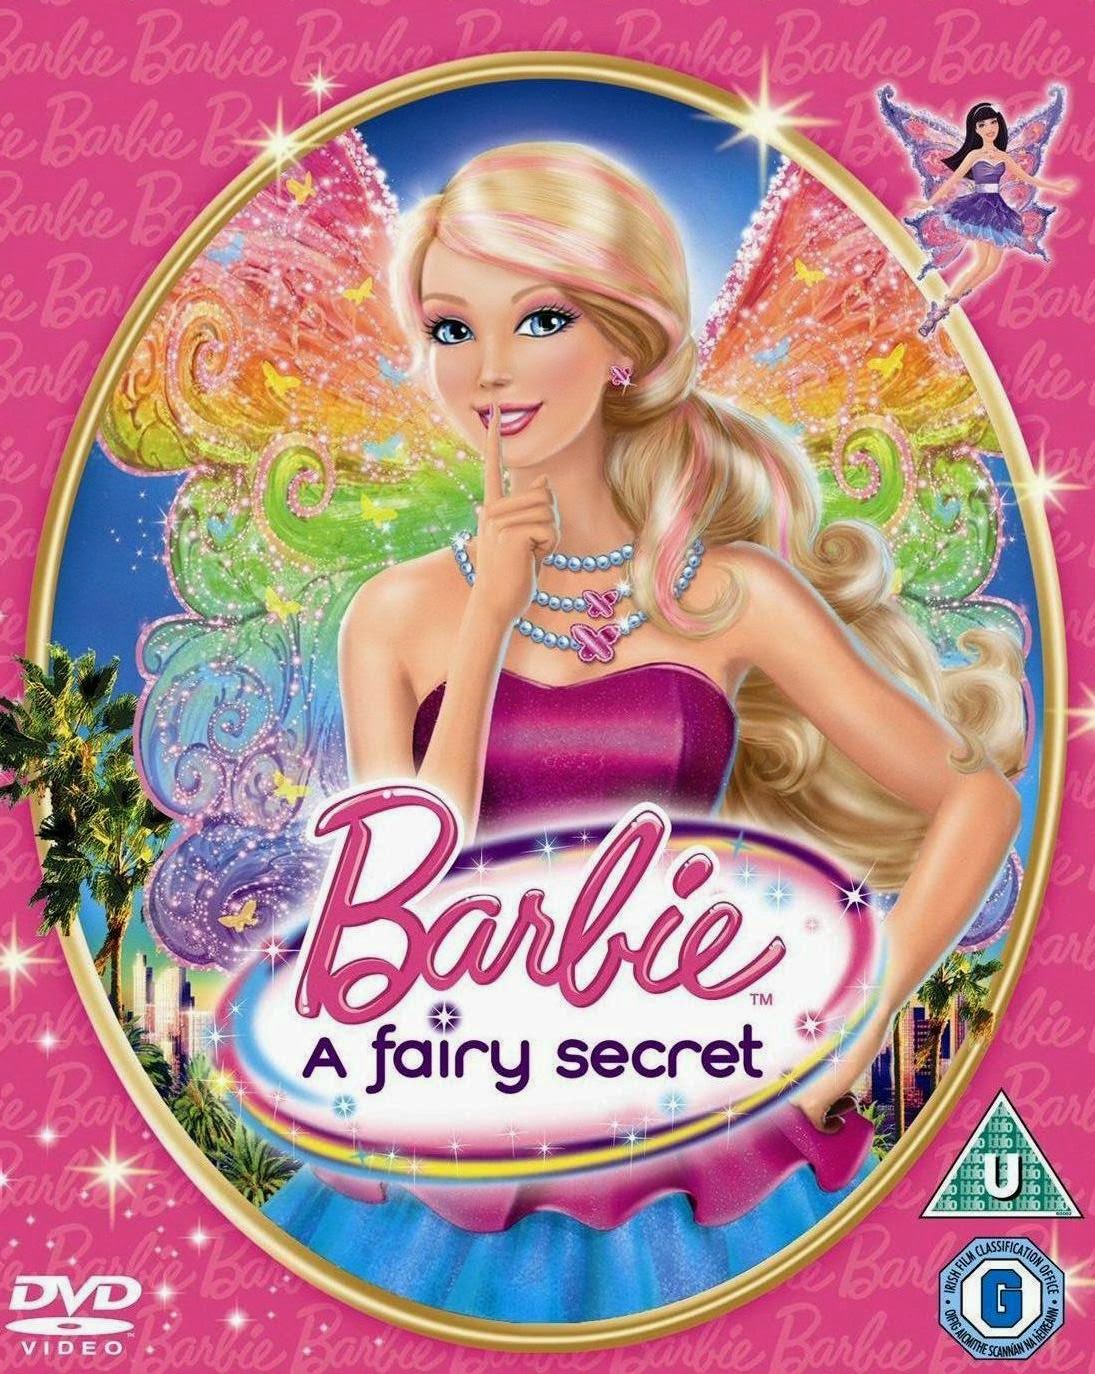 Watch Barbie: A Fairy Secret (2011) Full Movie Online